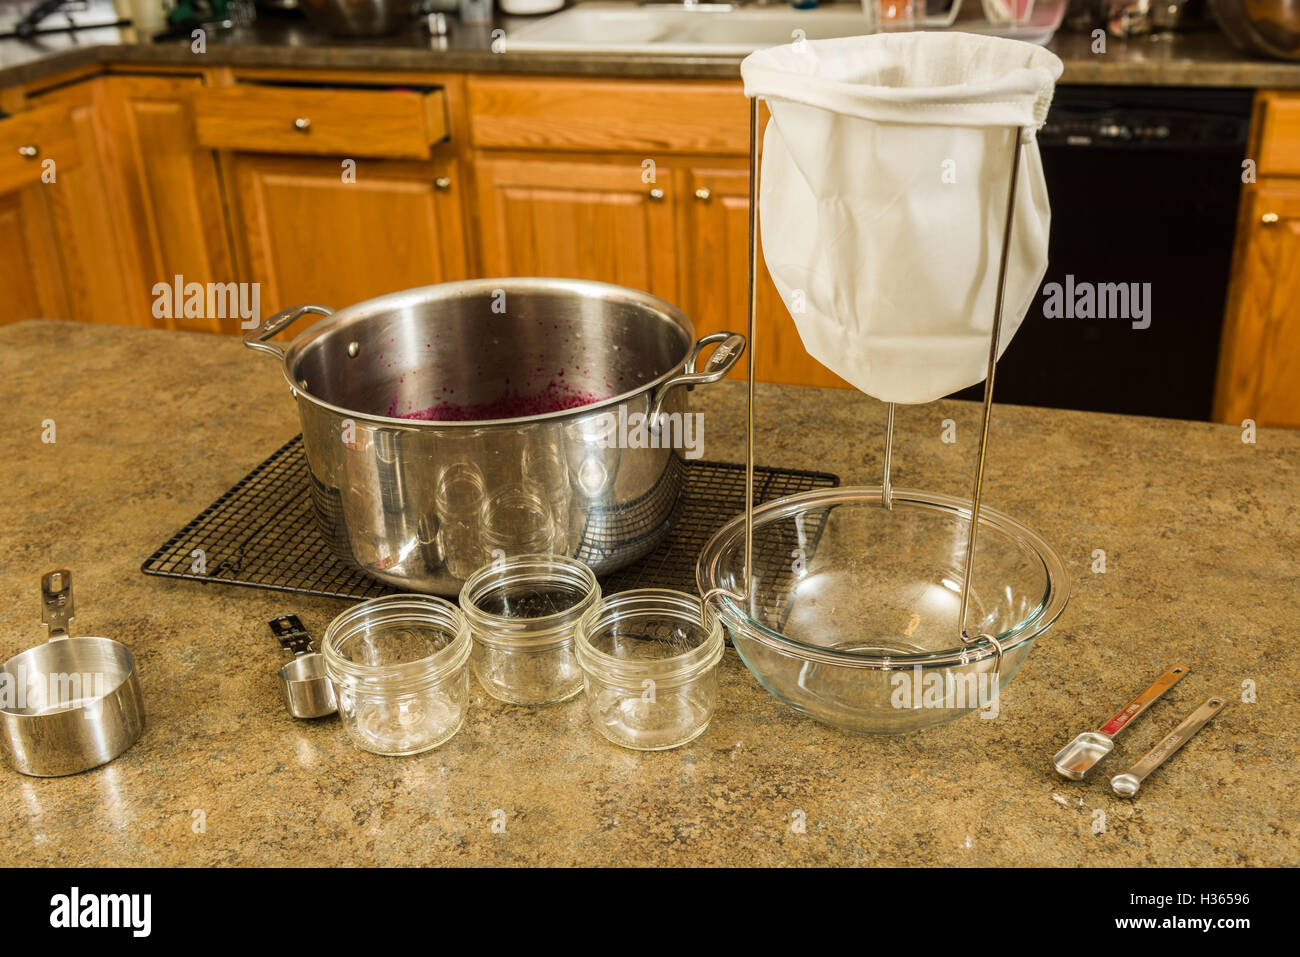 Gli elementi necessari per preparare in casa la gelatina o marmellata o a casa. Succhieruola, ciotola, dosatori, e bollitore Foto Stock